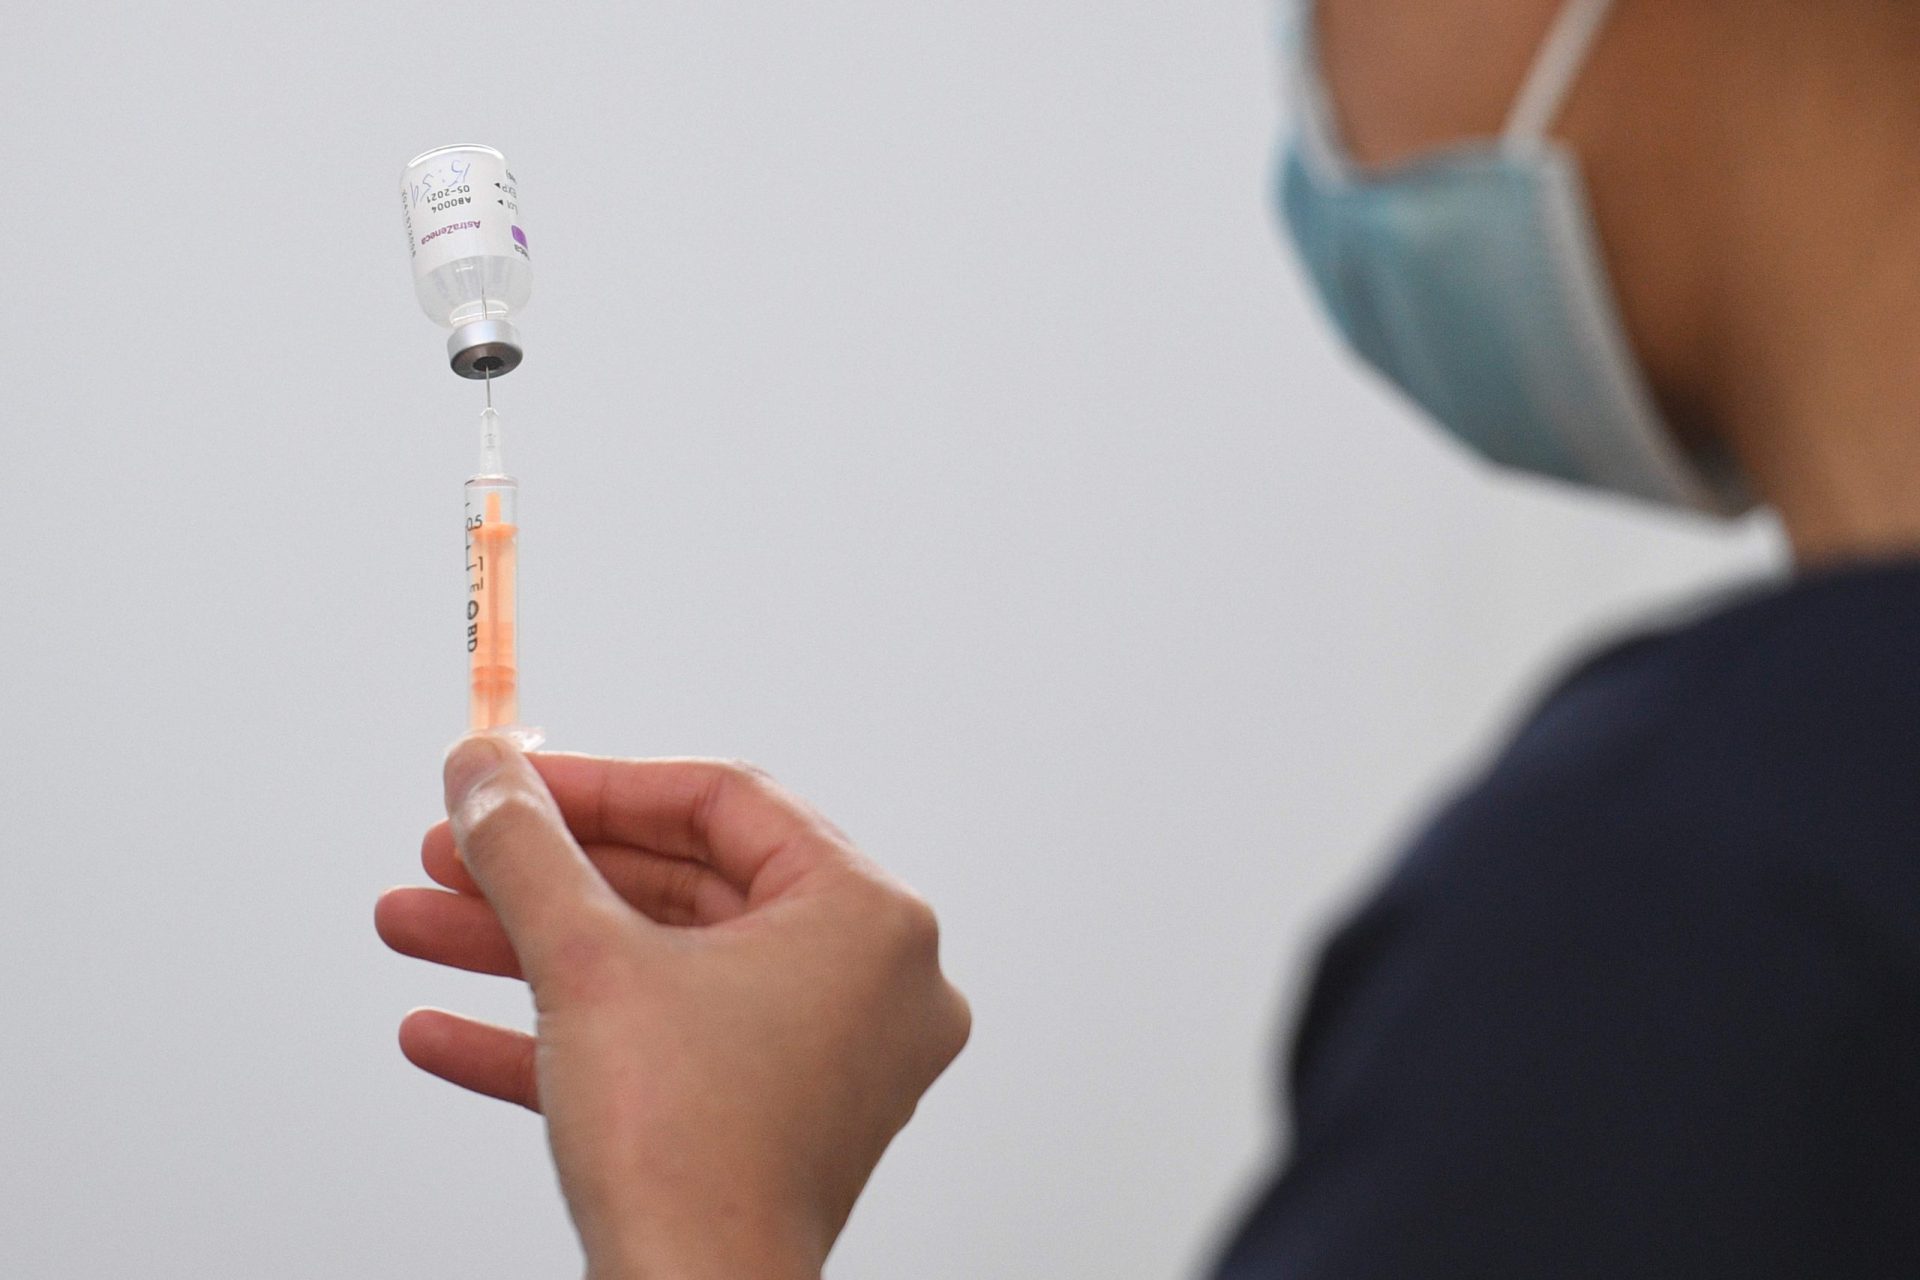 União Europeia divulga contrato assinado com a AstraZeneca para aquisição de vacinas contra a covid-19